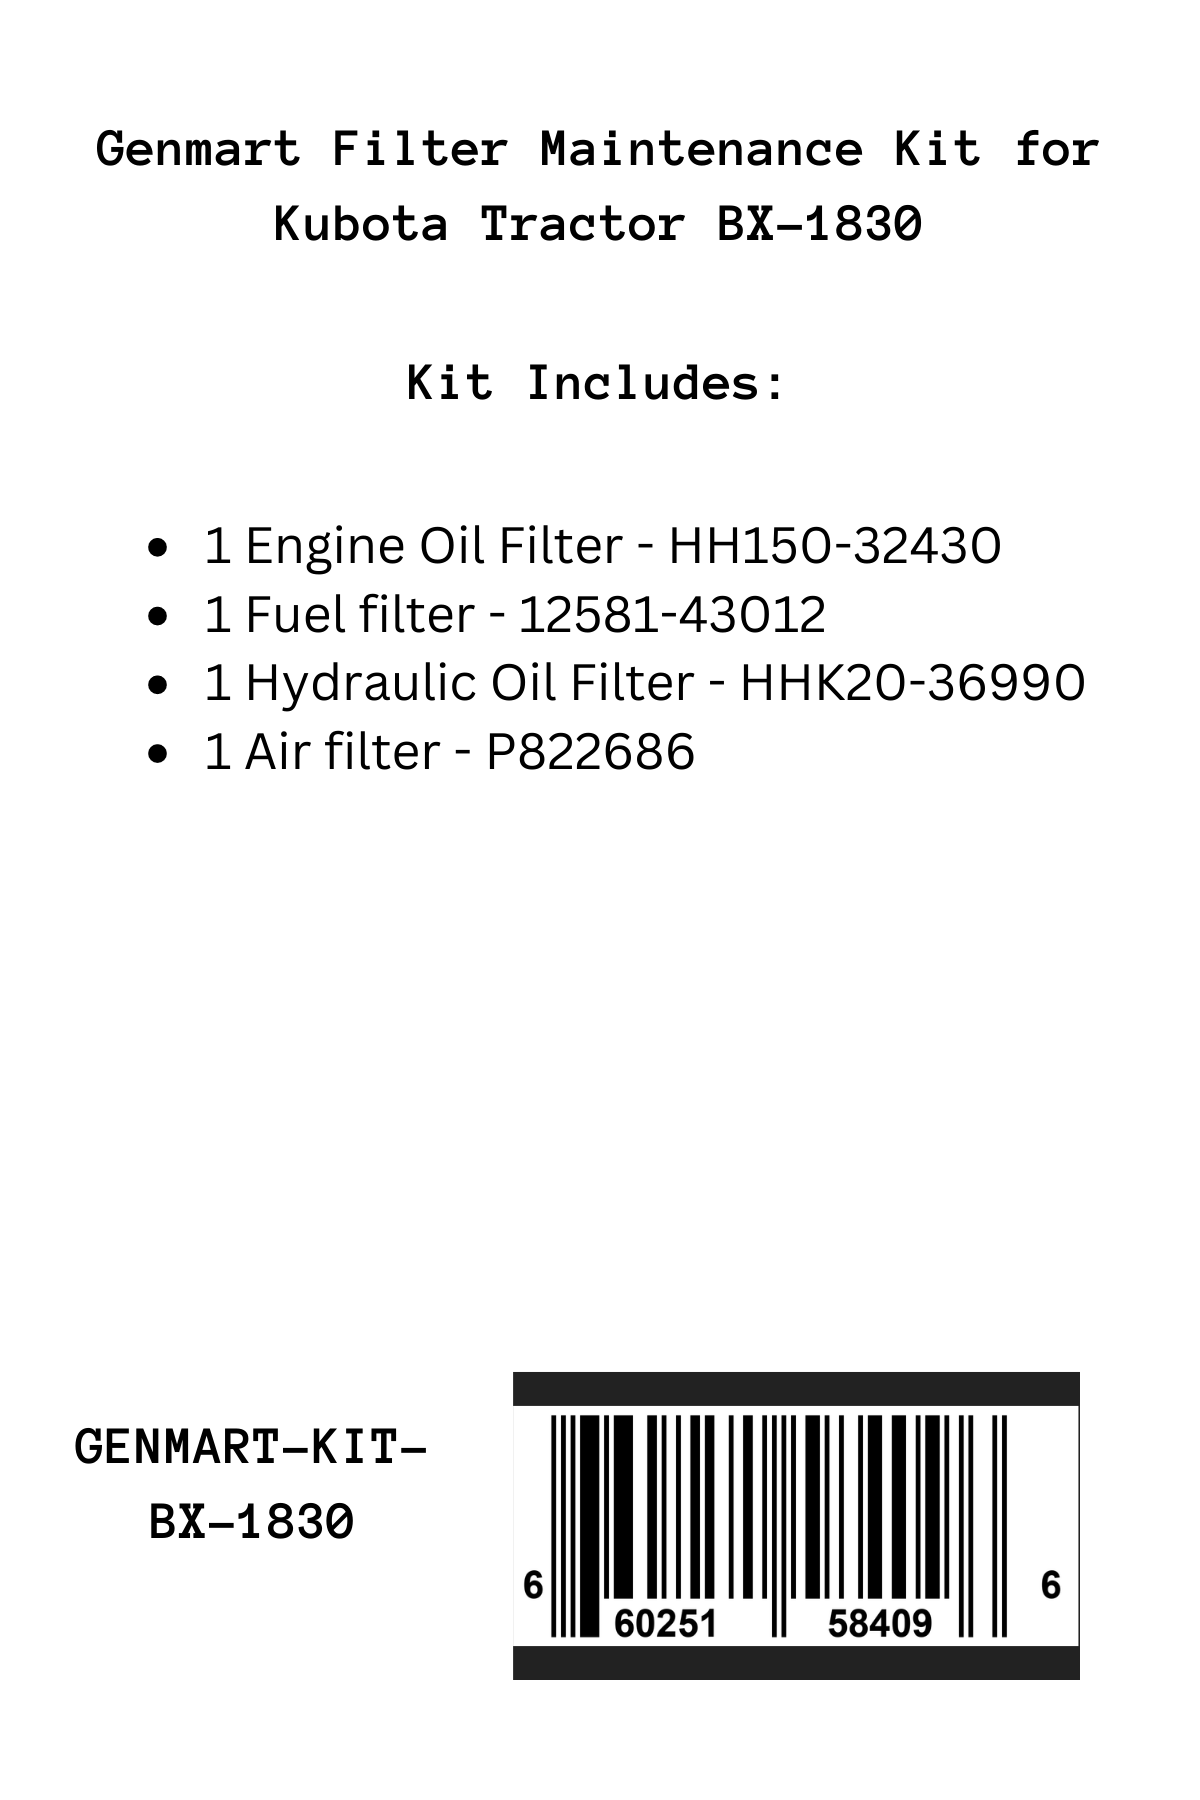 Genmart Maintenance Kit for Kubota Tractor BX-1830